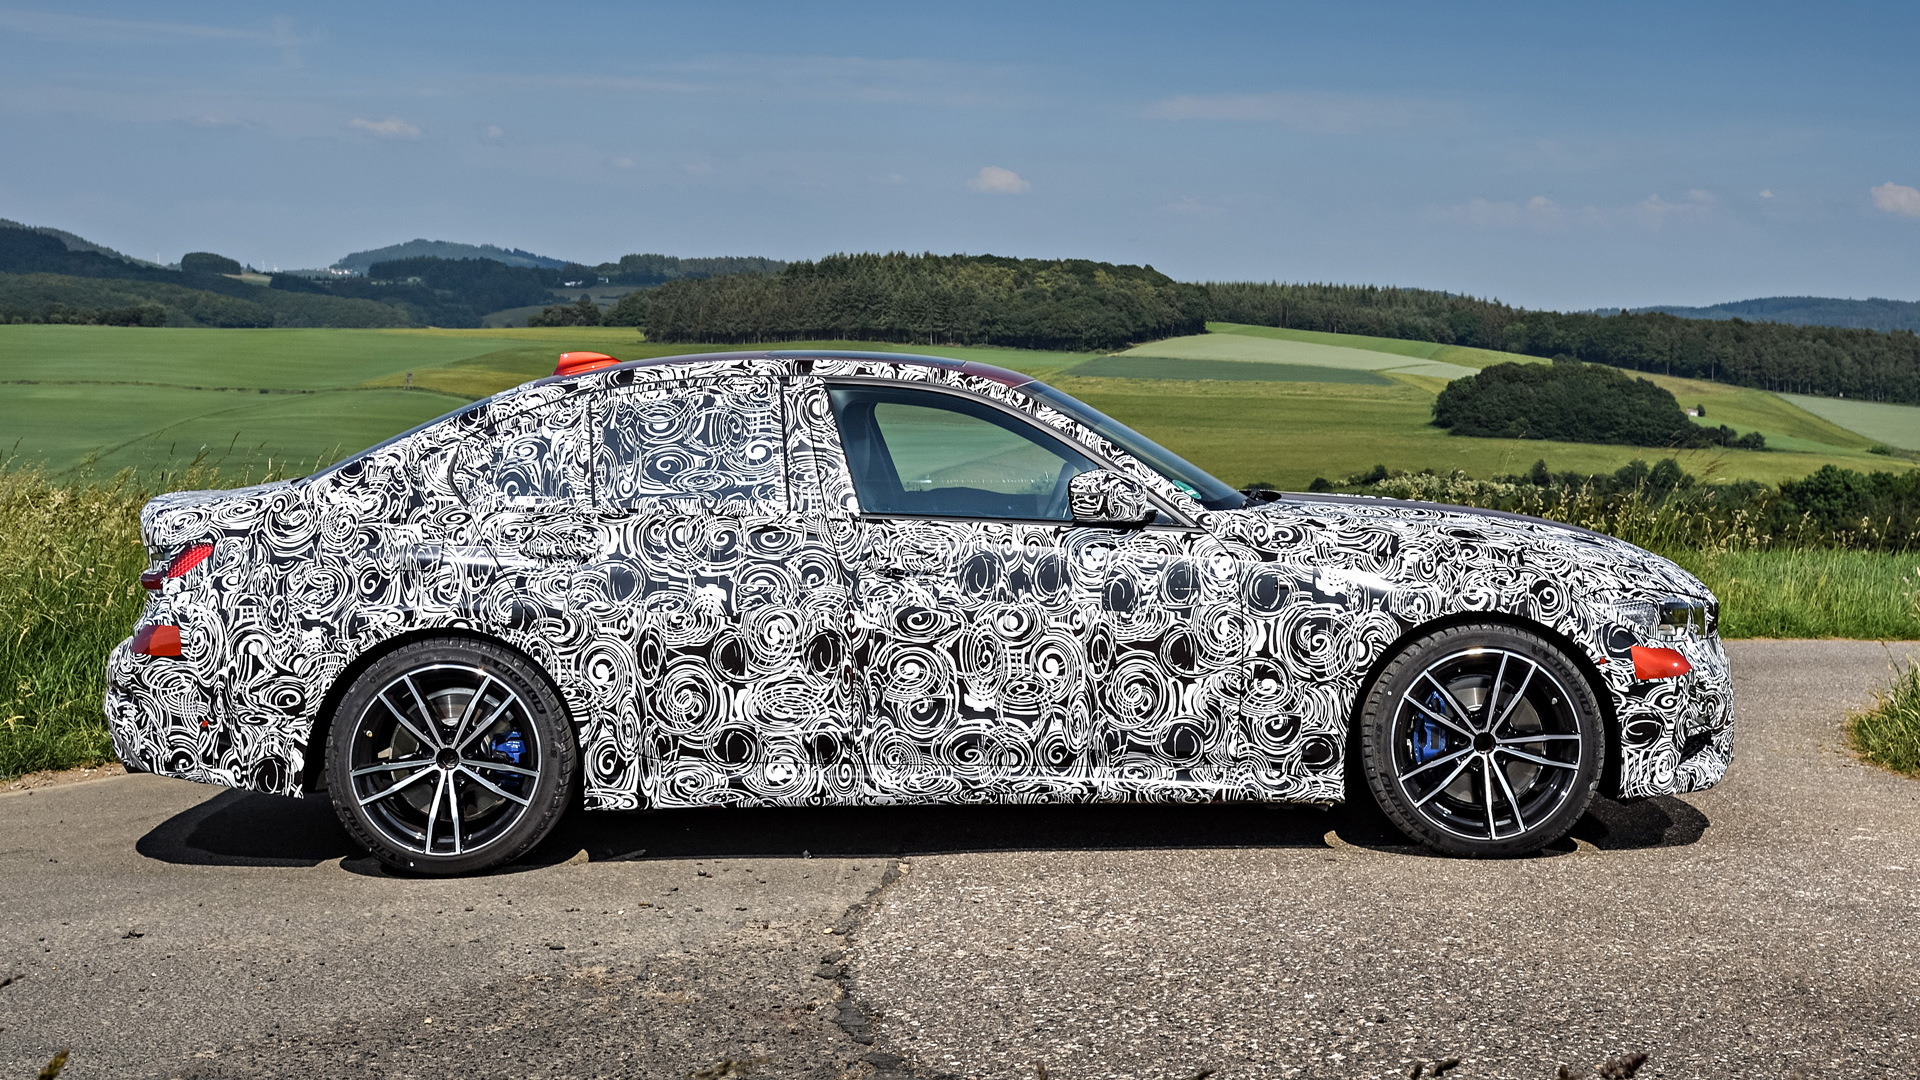 2019 BMW 3-Series prototype testing on the Nürburgring